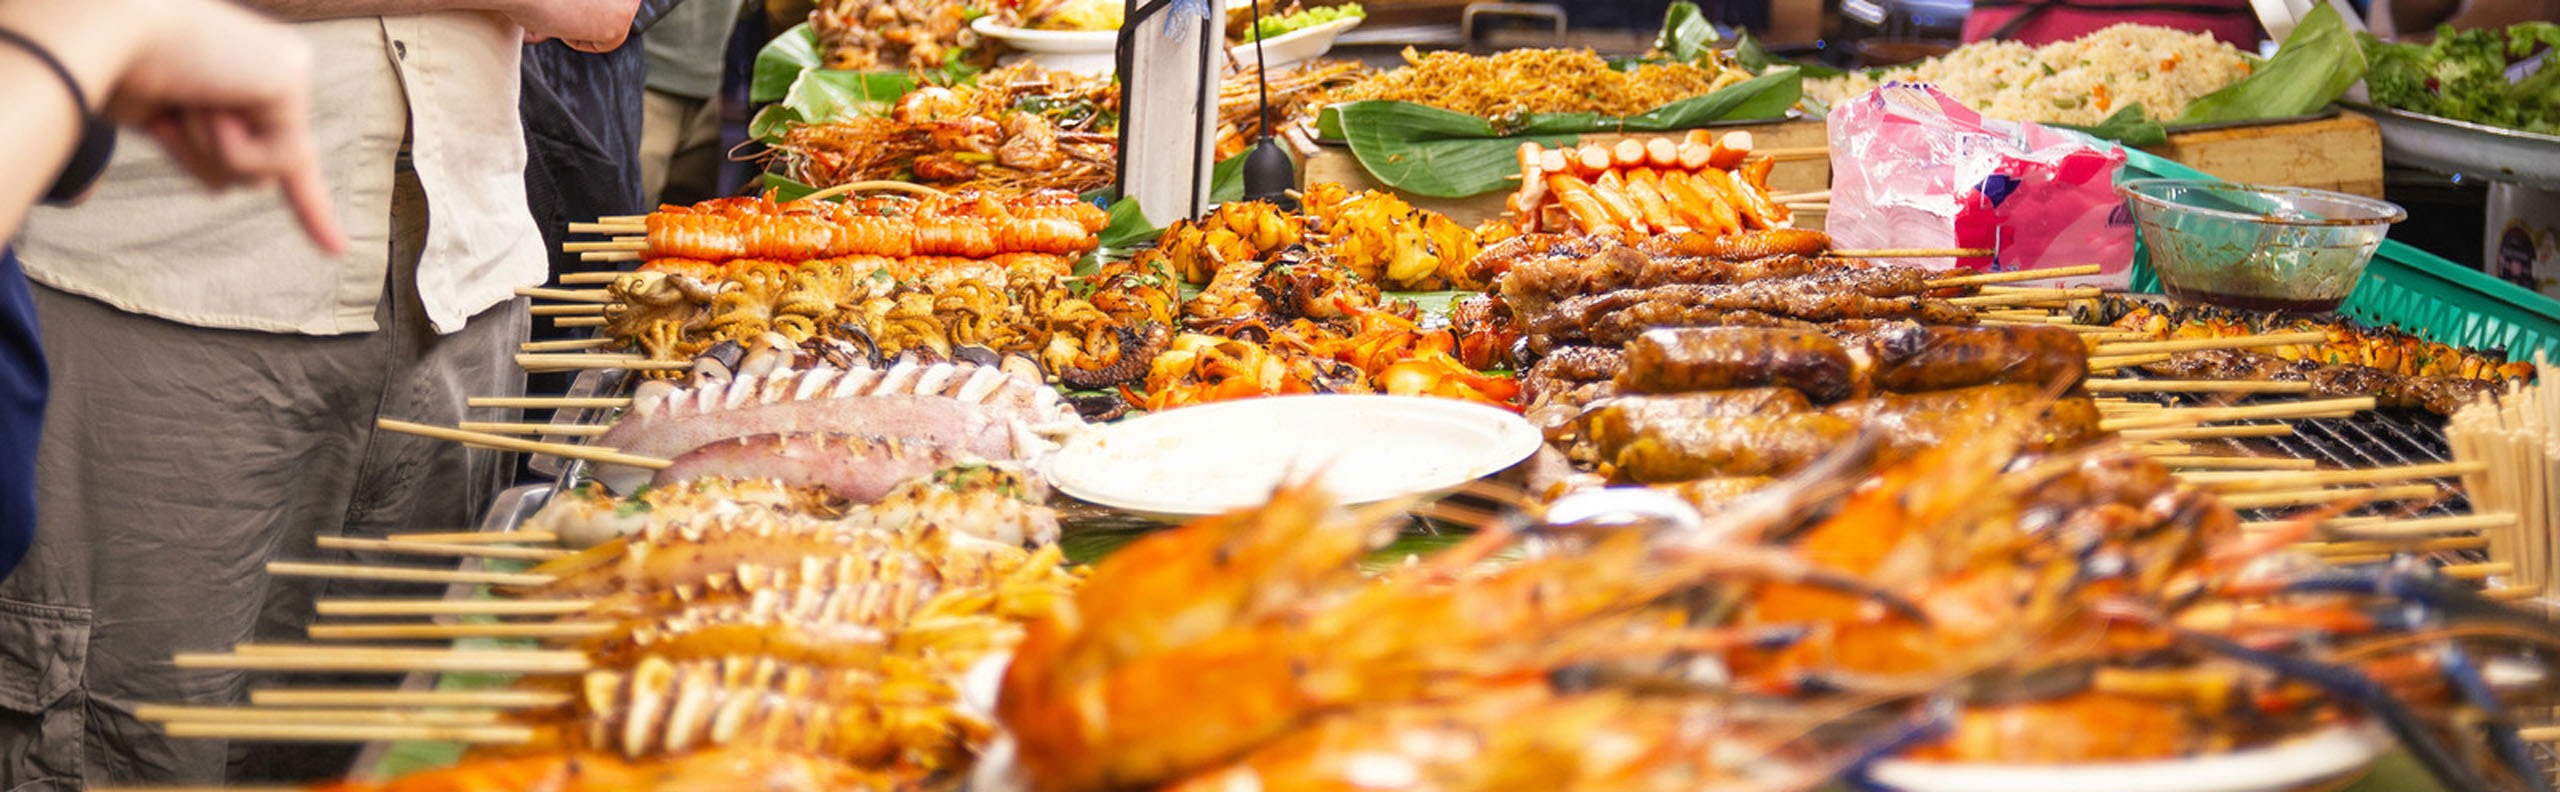 5 Best Thai Street Food Areas in Bangkok 